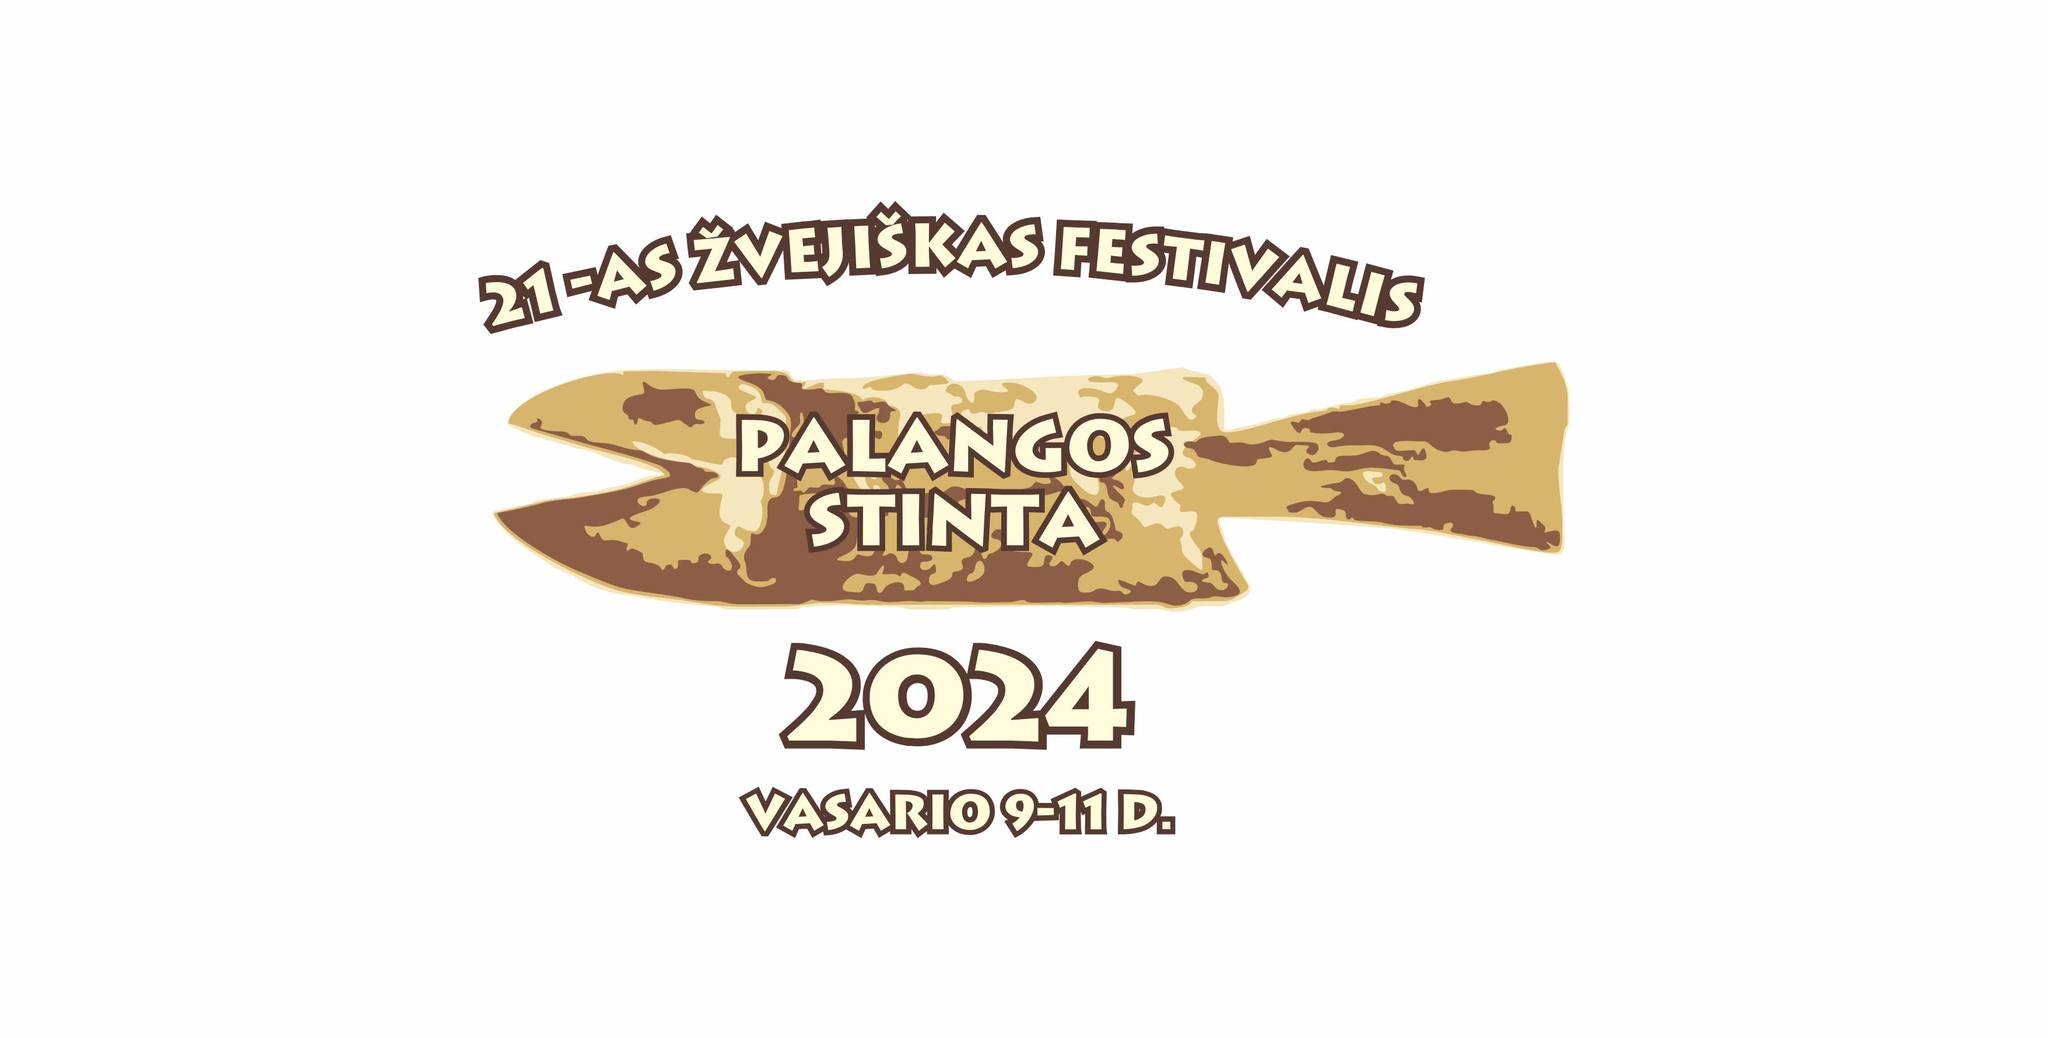 Квоты для госучреждений, визиты семейных специалистов, фестиваль корюшки Palangos stinta 2024 и другие новости